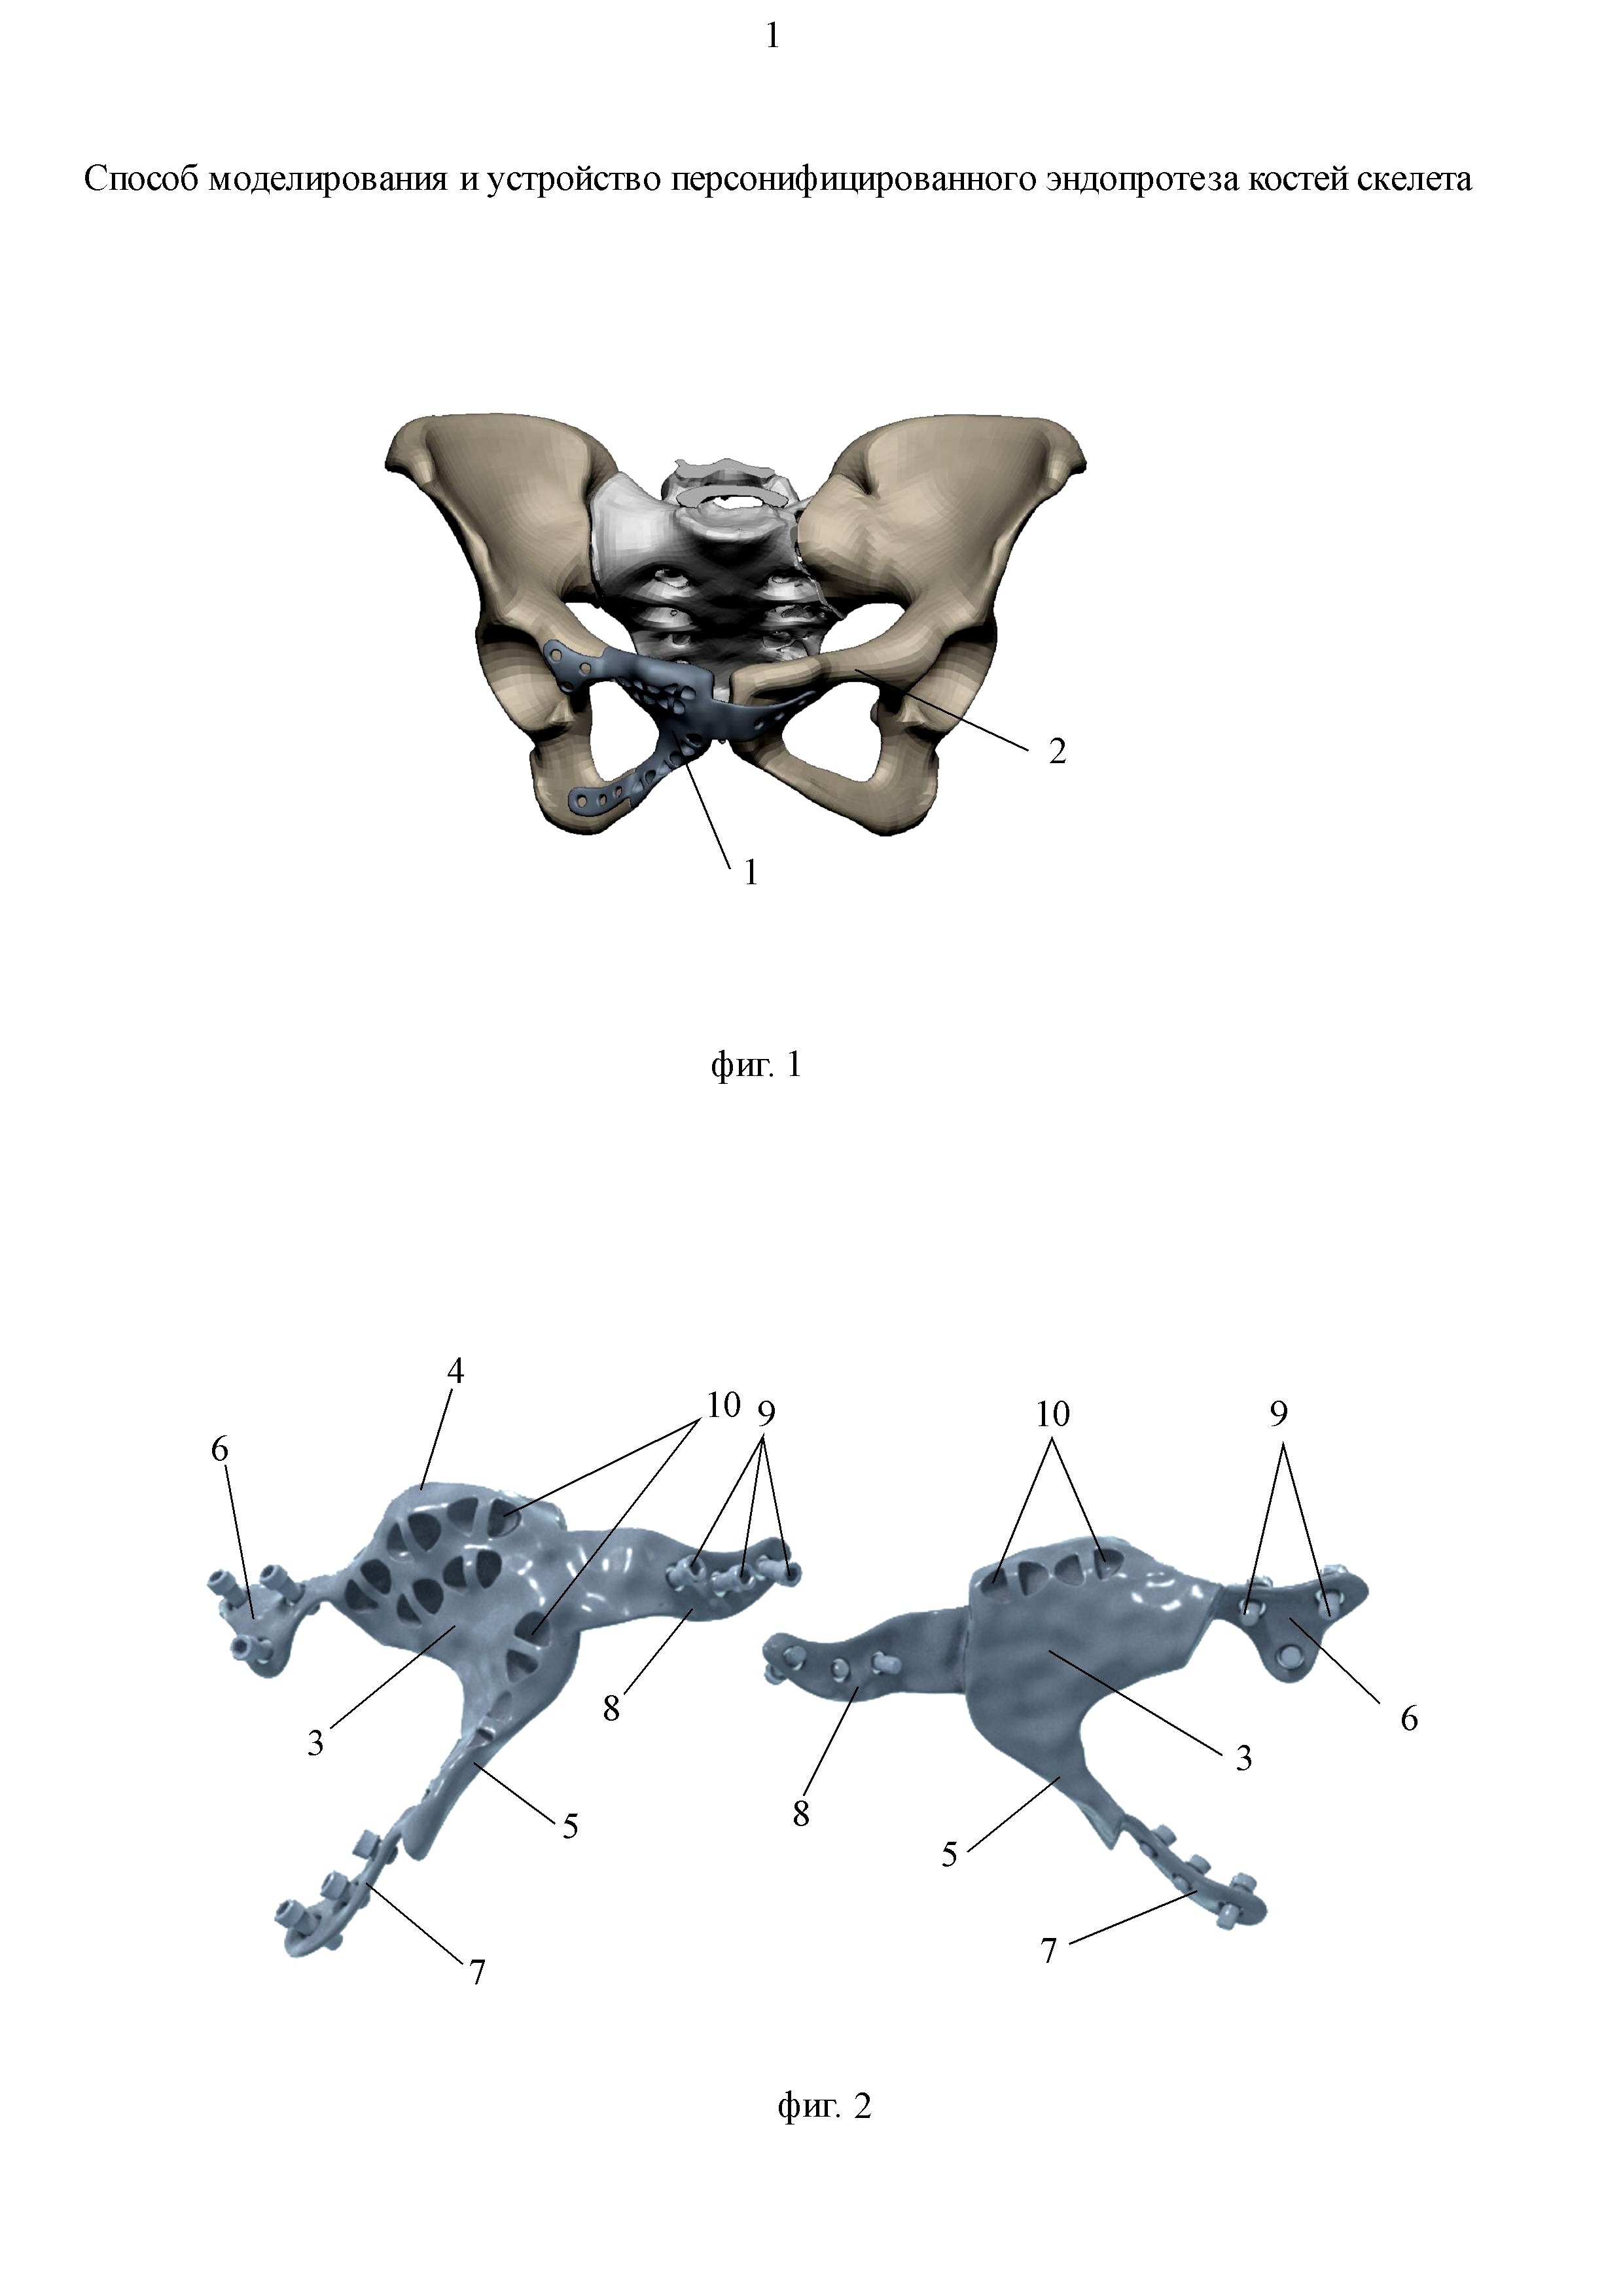 Способ моделирования и устройство персонифицированного эндопротеза костей скелета